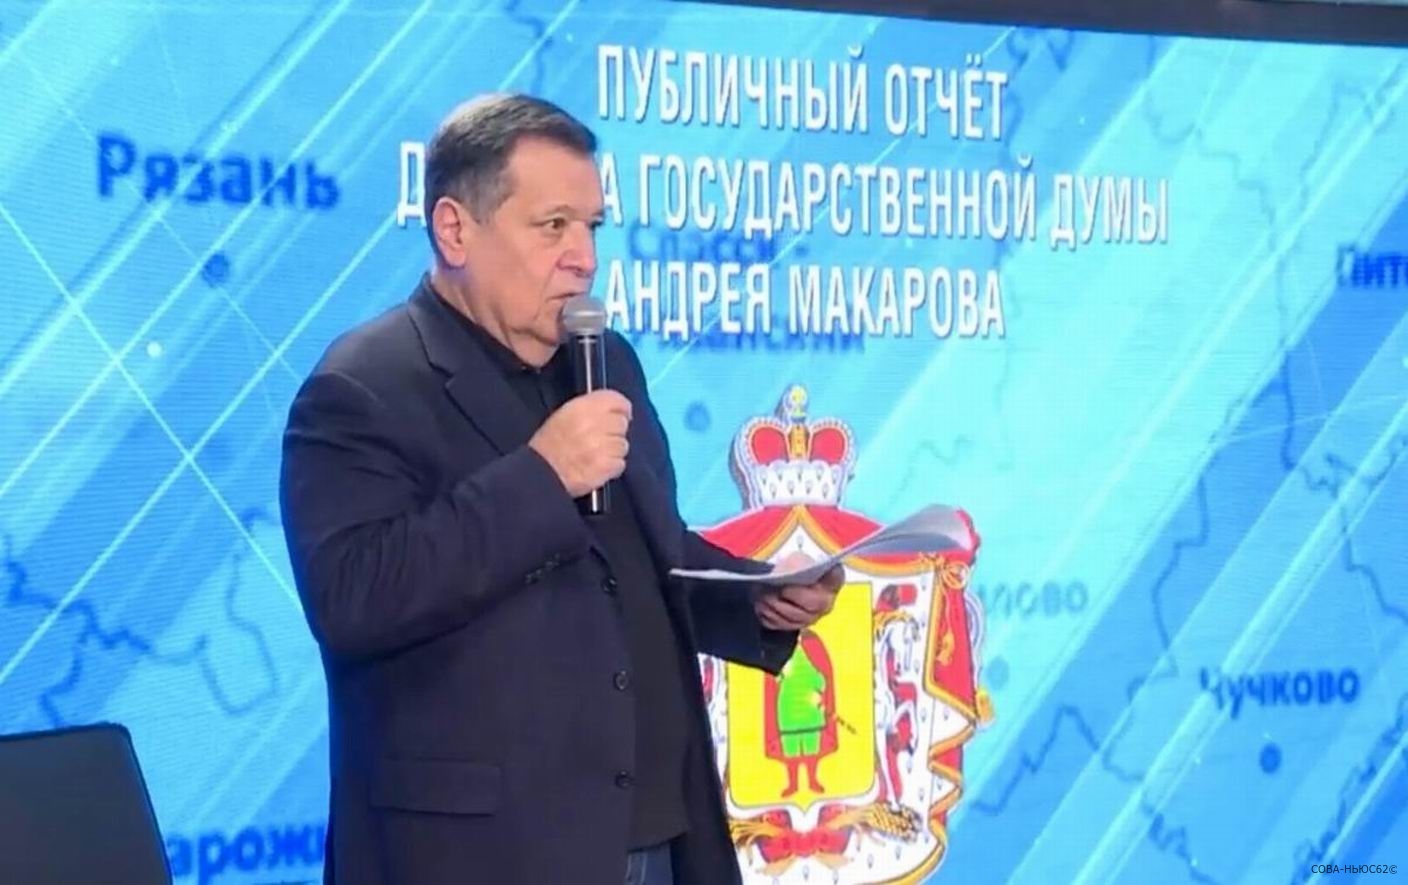 Депутат Госдумы Андрей Макаров оценил успехи рязанцев выше средних по стране